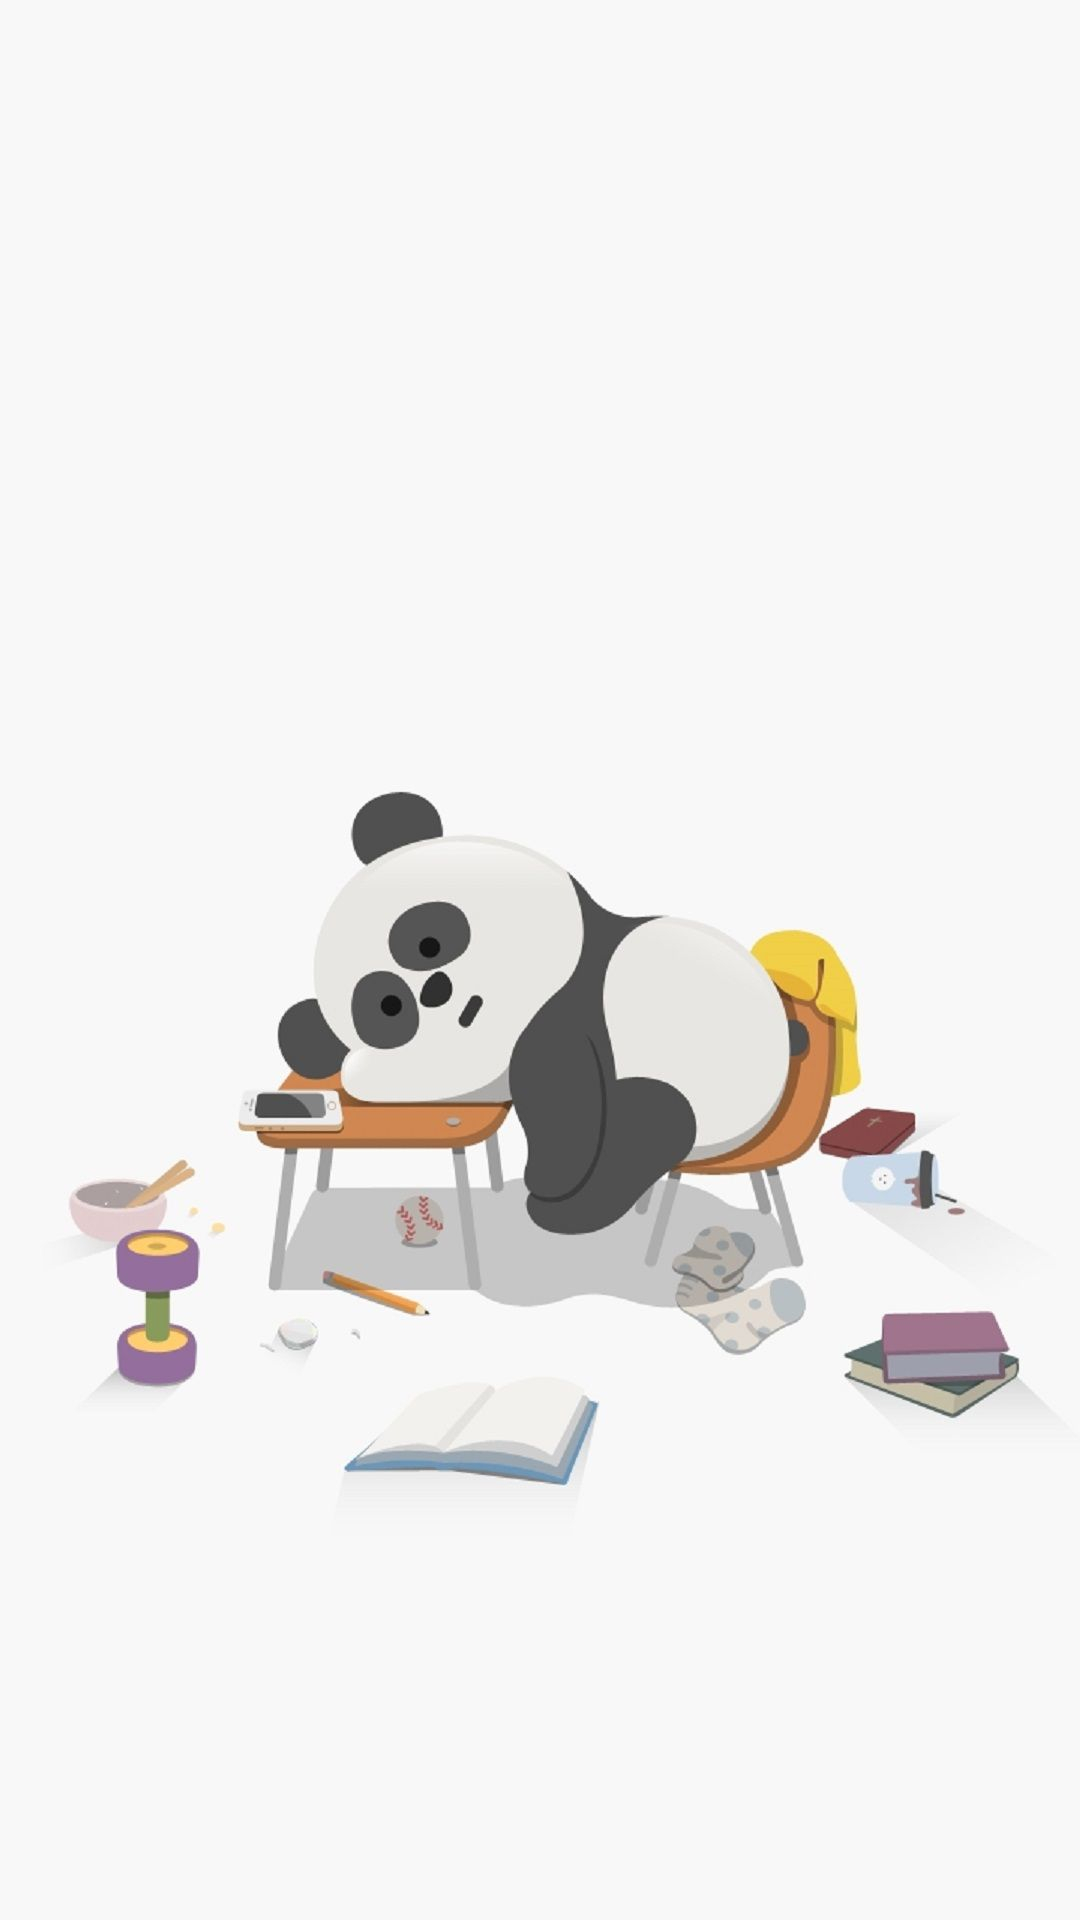 1080x1920 Sleepy Panda | Cute panda wallpaper, Cute cartoon wallpapers, Panda wallpapers